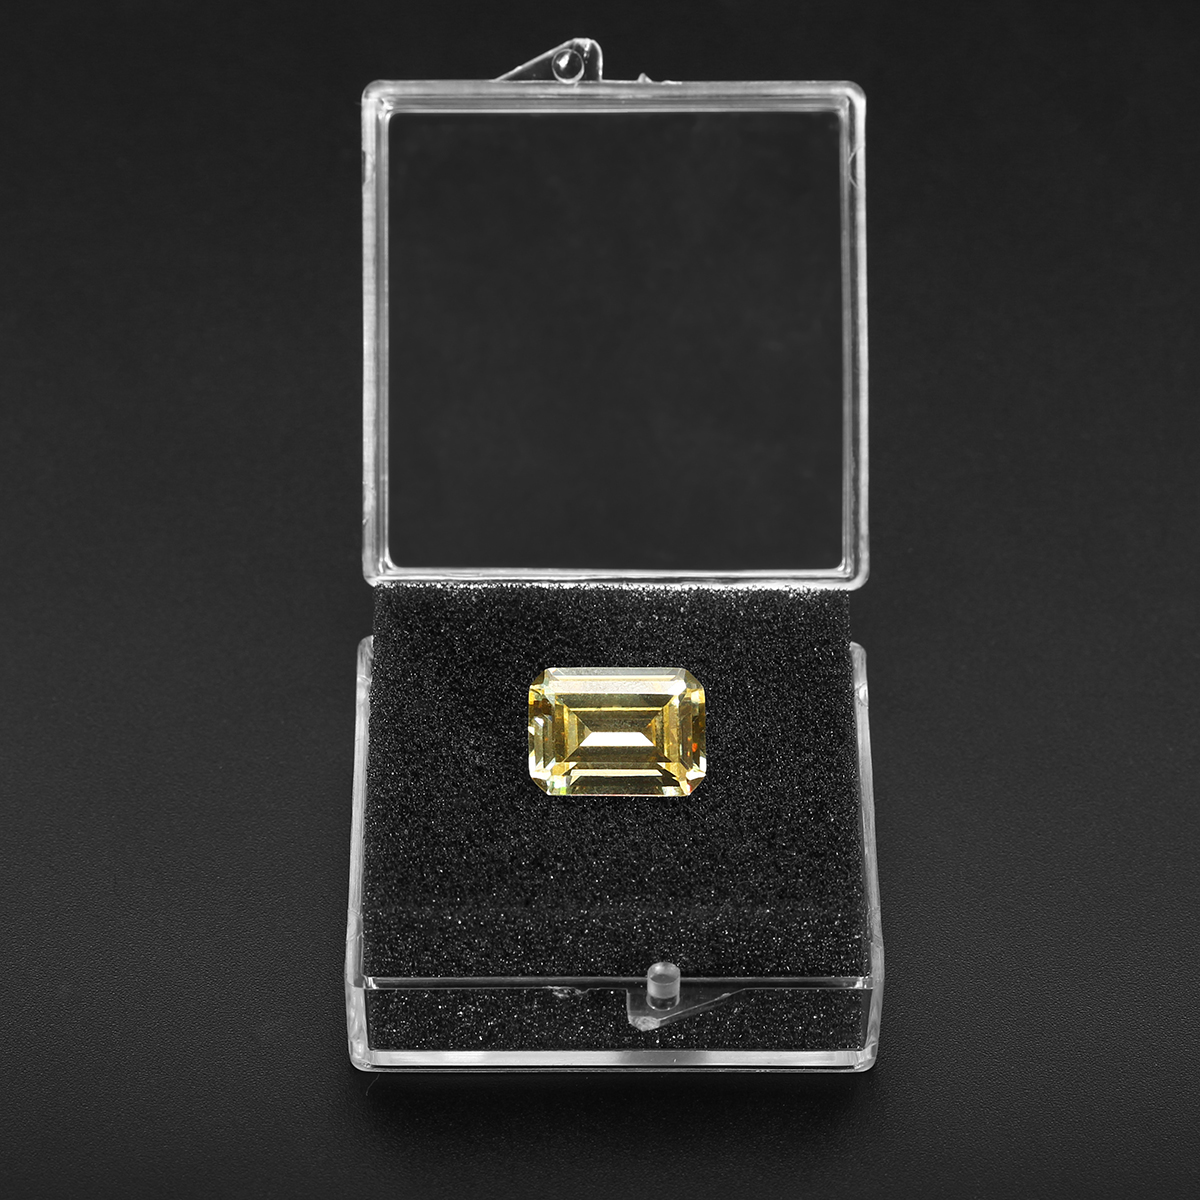 

Нежный Желтый Драгоценный Камень Циркон 11.50ct 10x14 мм Прямоугольник VVS Cut AAAA + Ювелирные Украшения